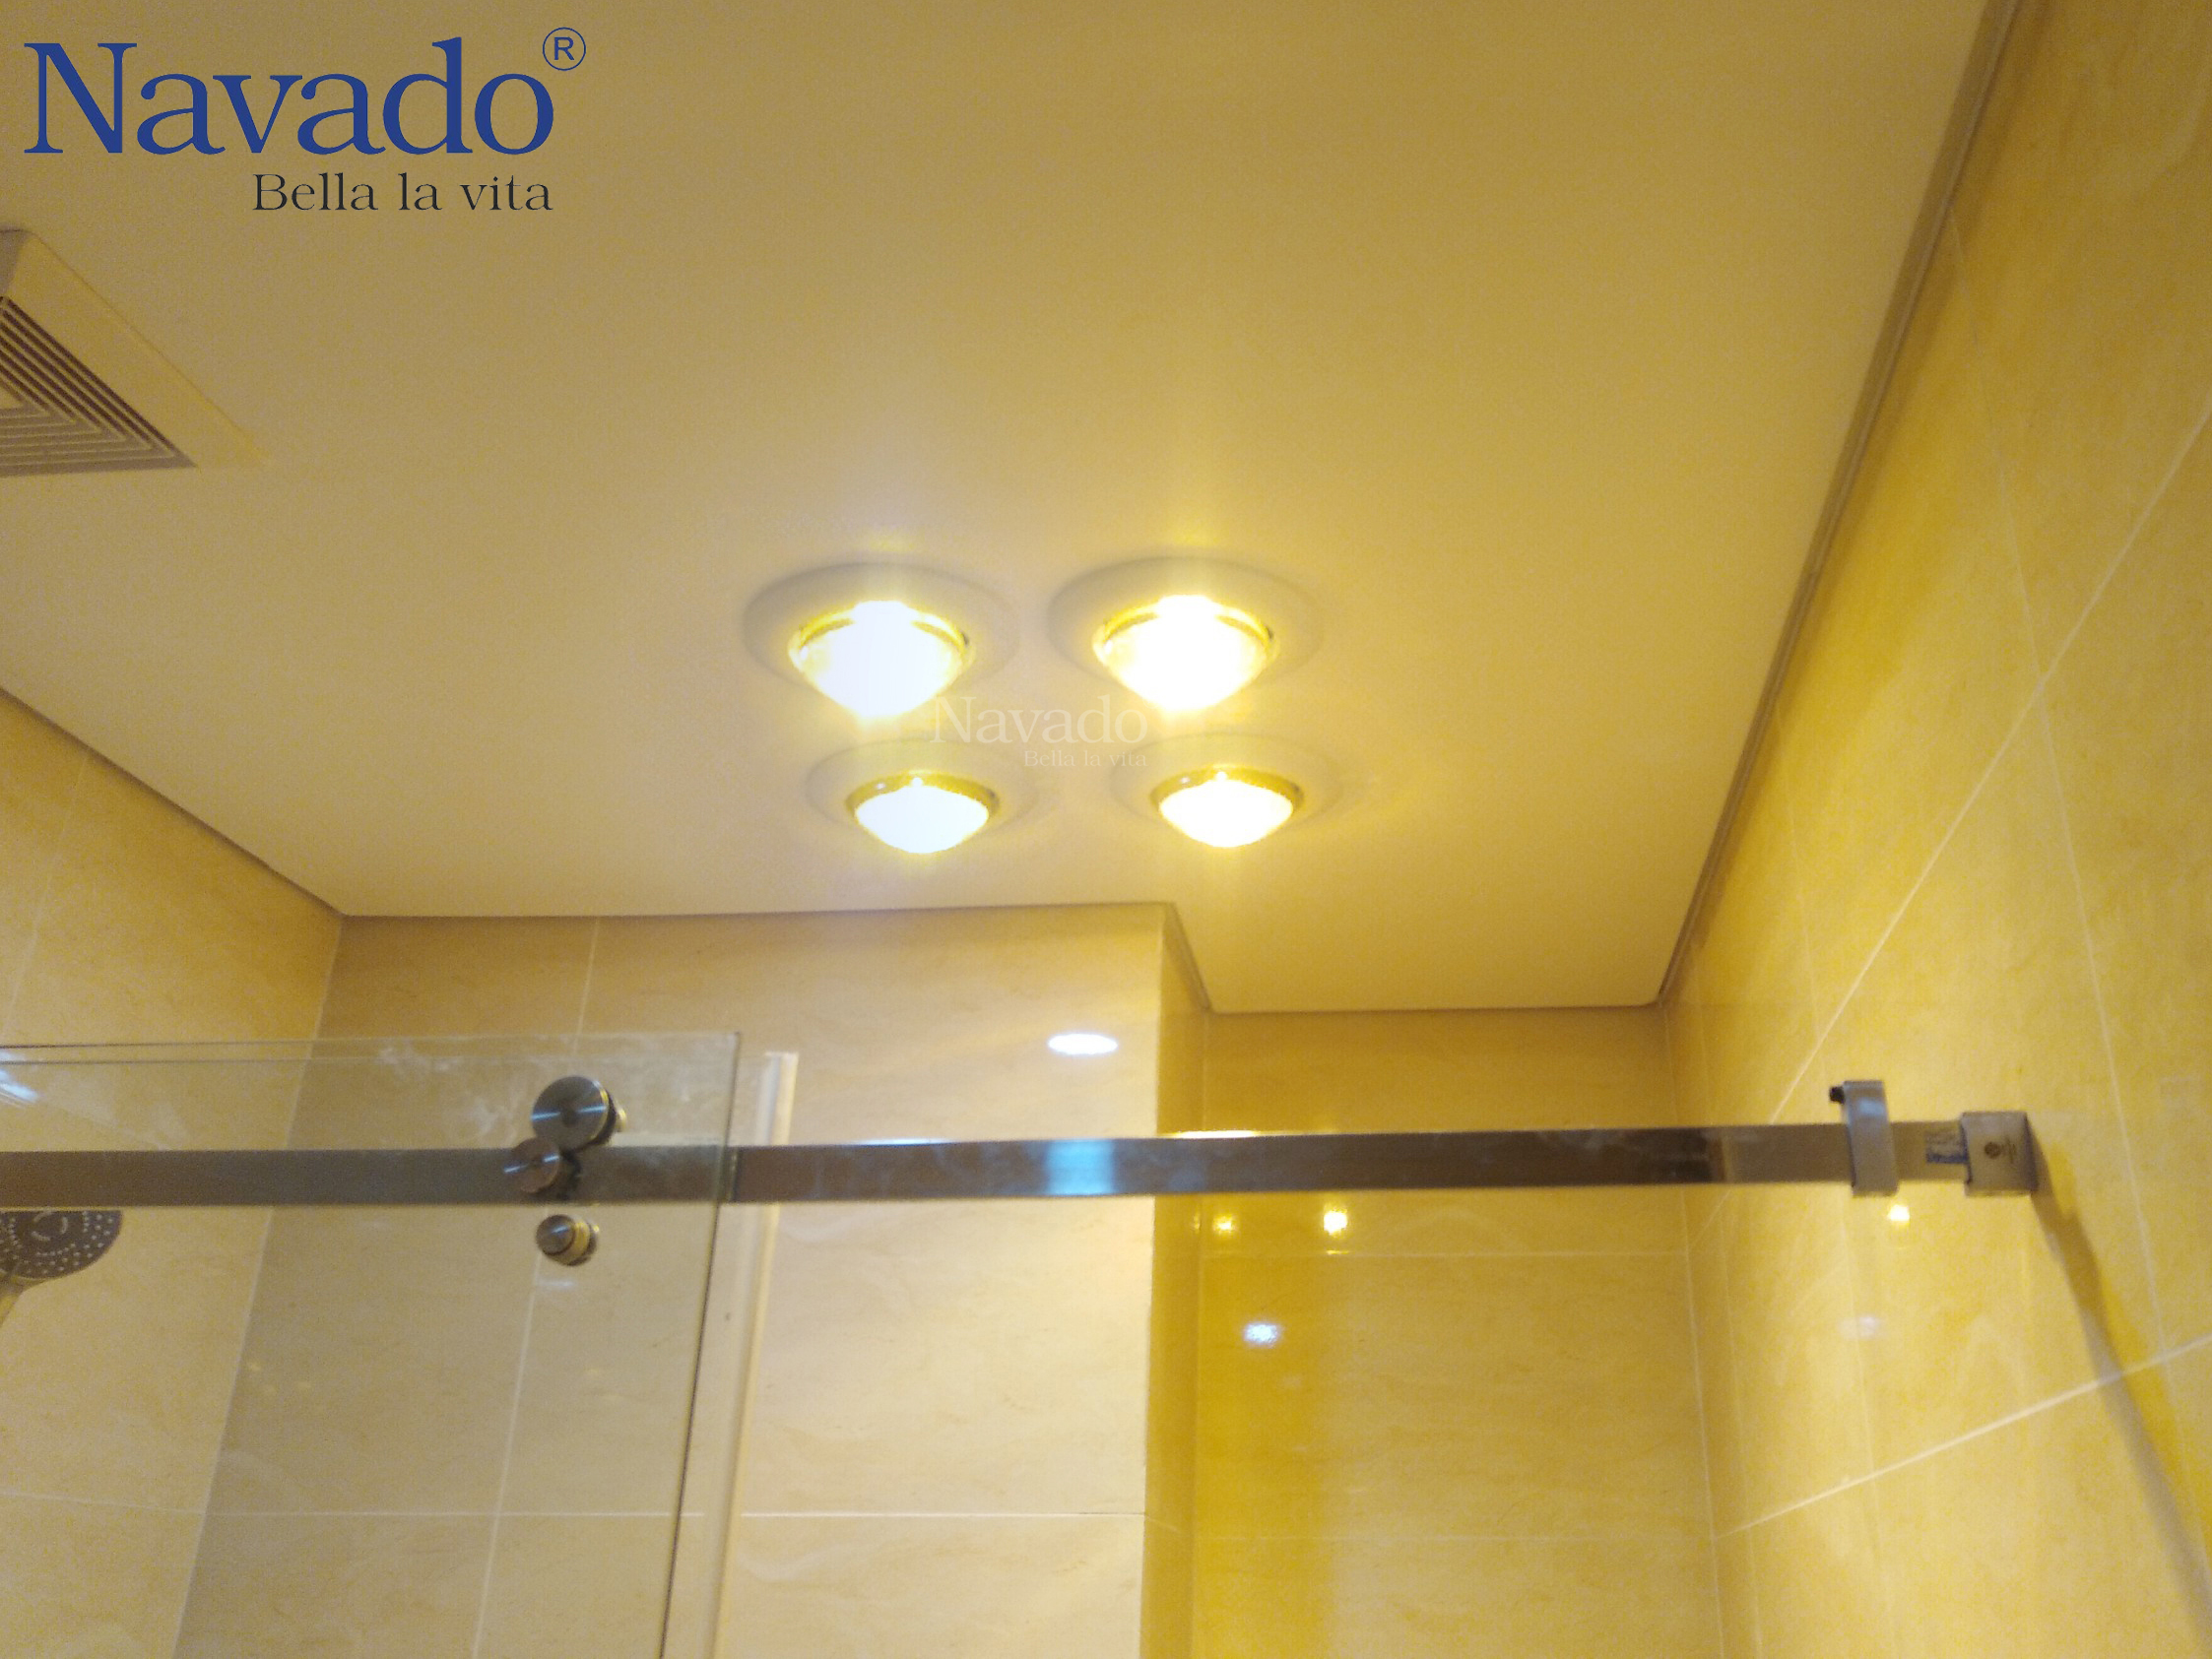 Đèn sưởi nhà tắm Navado giúp cho không gian nhà tắm trở nên dễ chịu và ấm cúng hơn vào mùa đông. Với công nghệ tiên tiến và thiết kế hiện đại, đèn sưởi Navado tiết kiệm điện và bảo vệ môi trường. Hãy cùng khám phá chi tiết sản phẩm này trong hình ảnh.